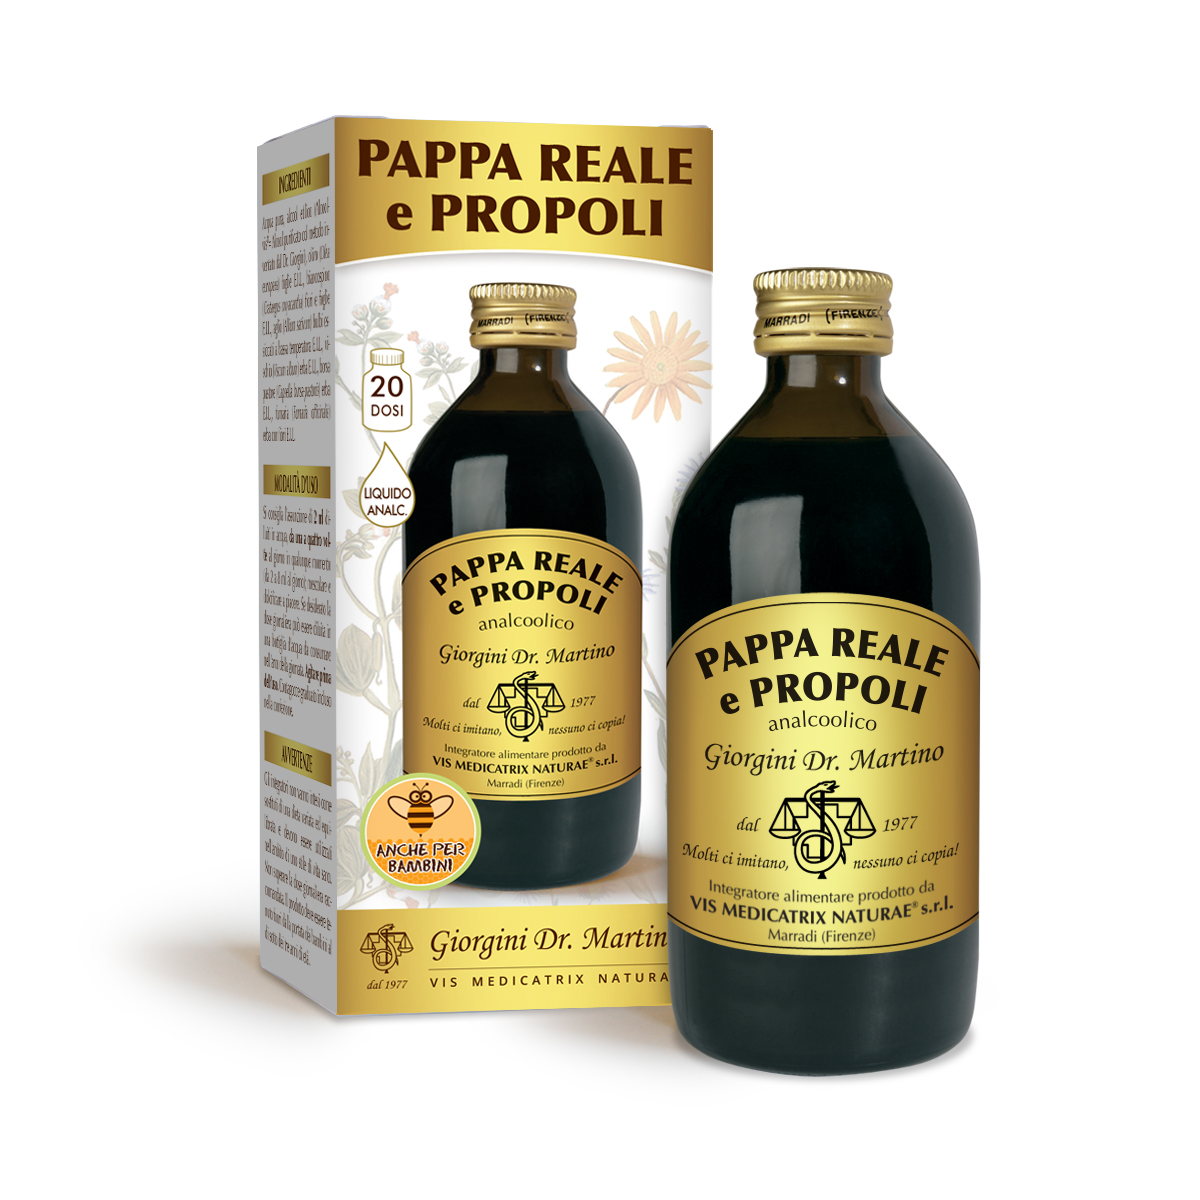 PAPPA REALE E PROPOLI analc.200 ml